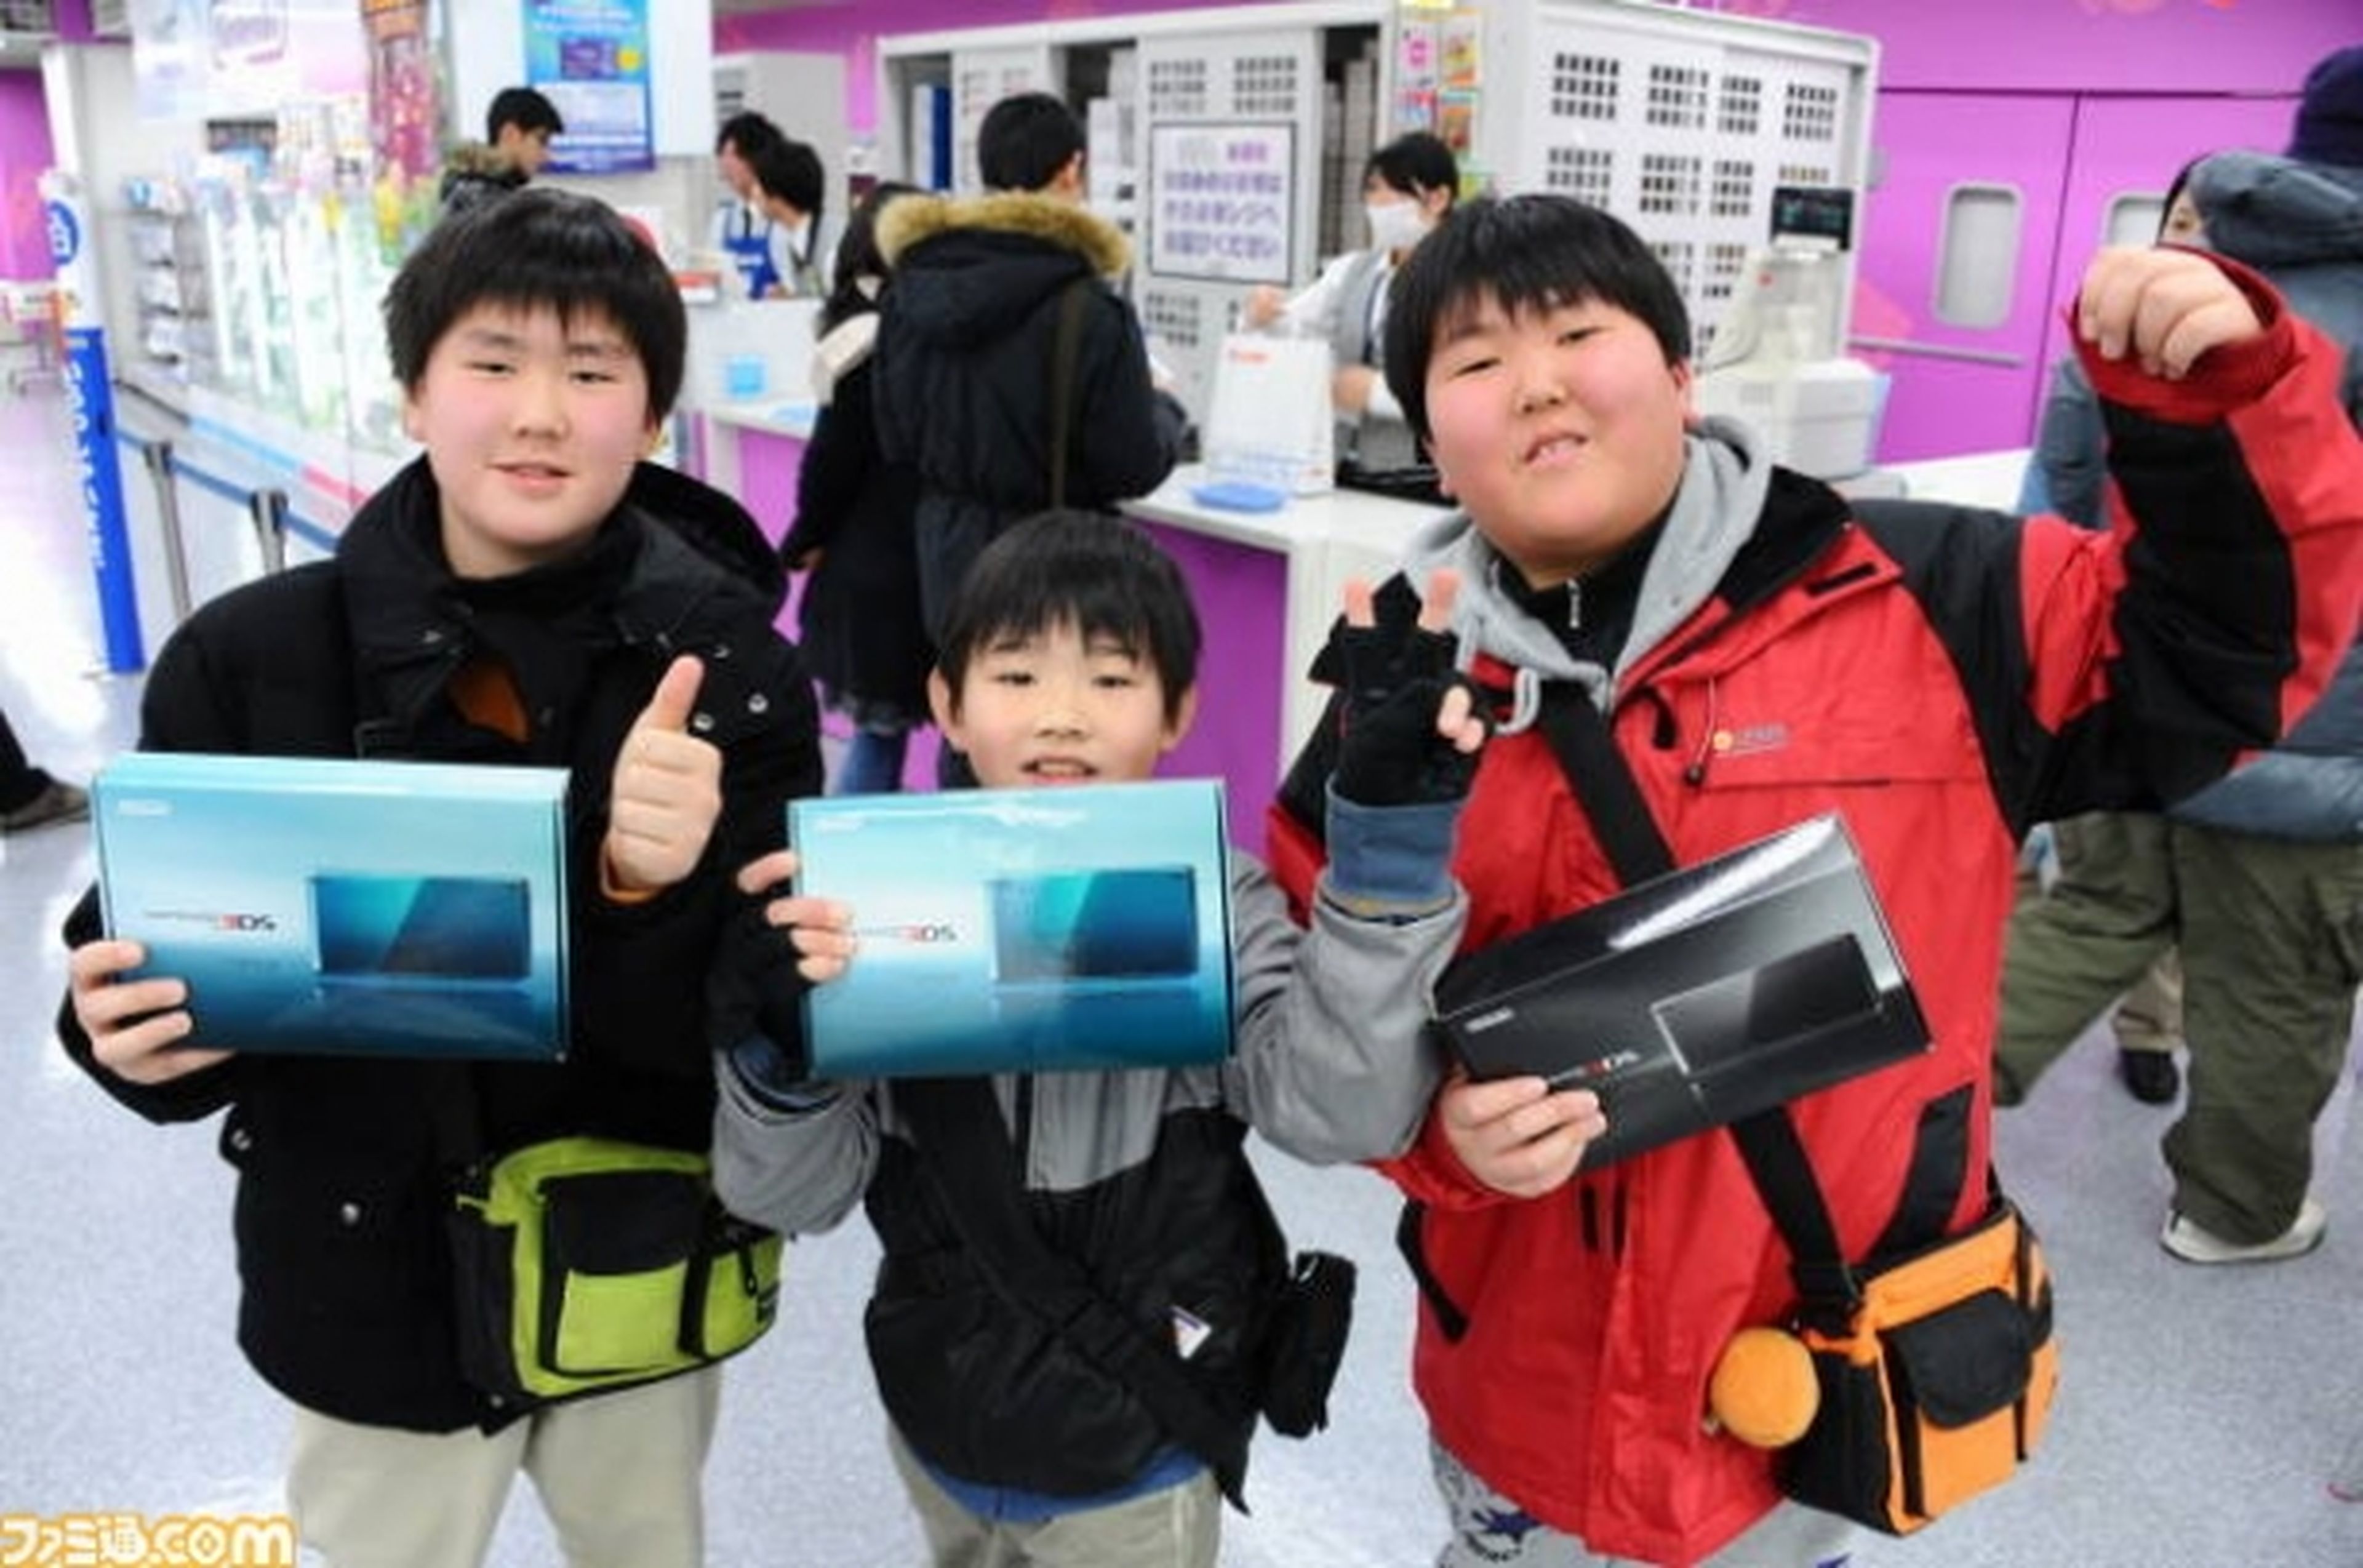 3DS ya ha vendido 15 millones de consolas en Japón